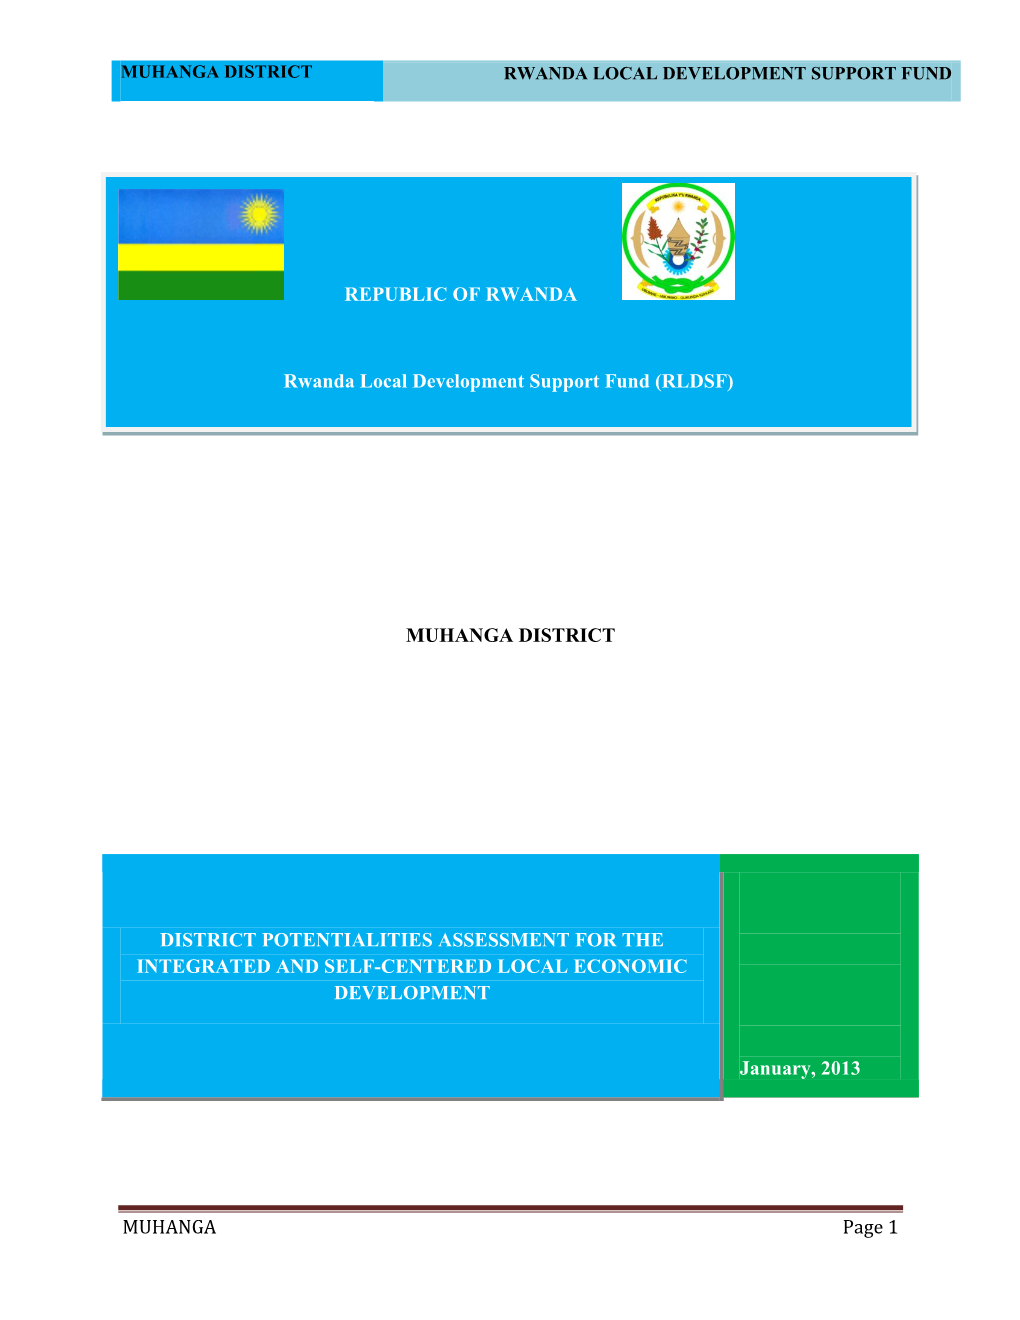 Muhanga District Rwanda Local Development Support Fund